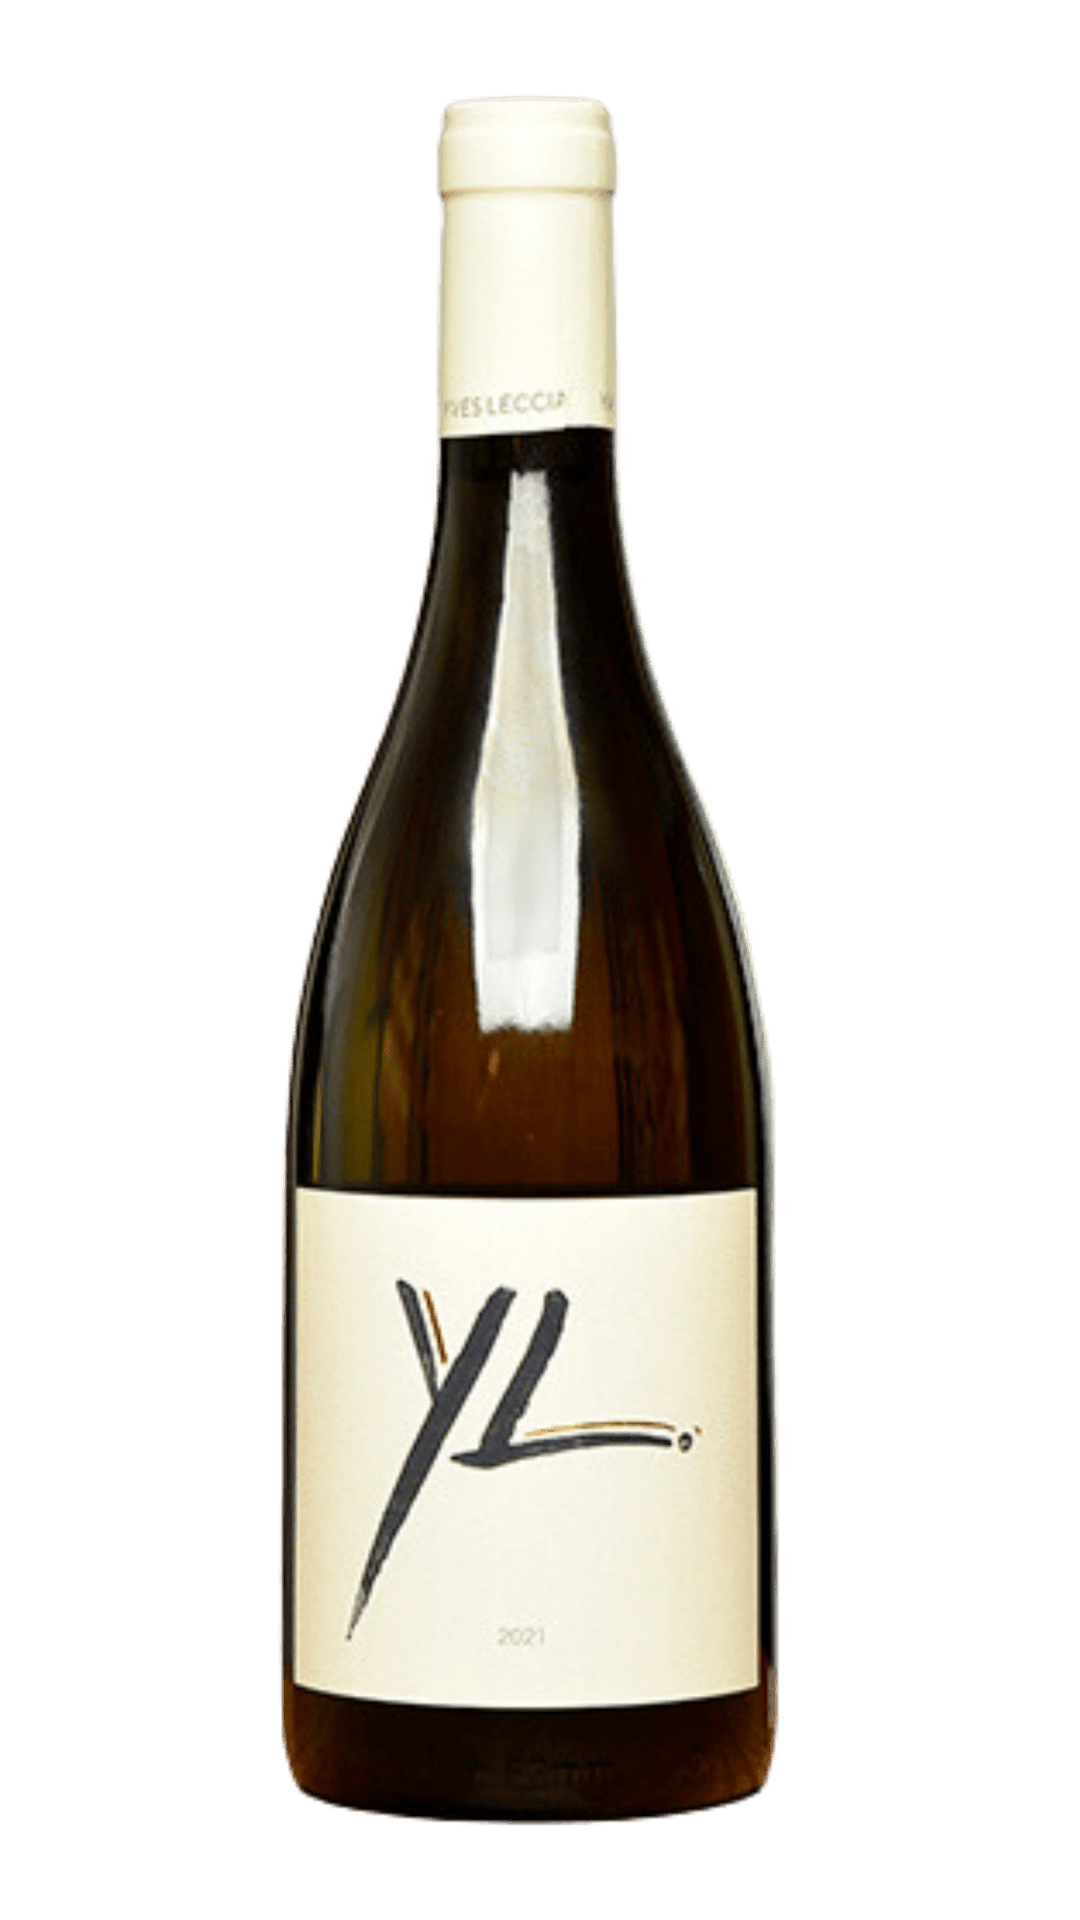 2022 Yves Leccia 'YL' île de Beauté Blanc - Harvest Wine Shop